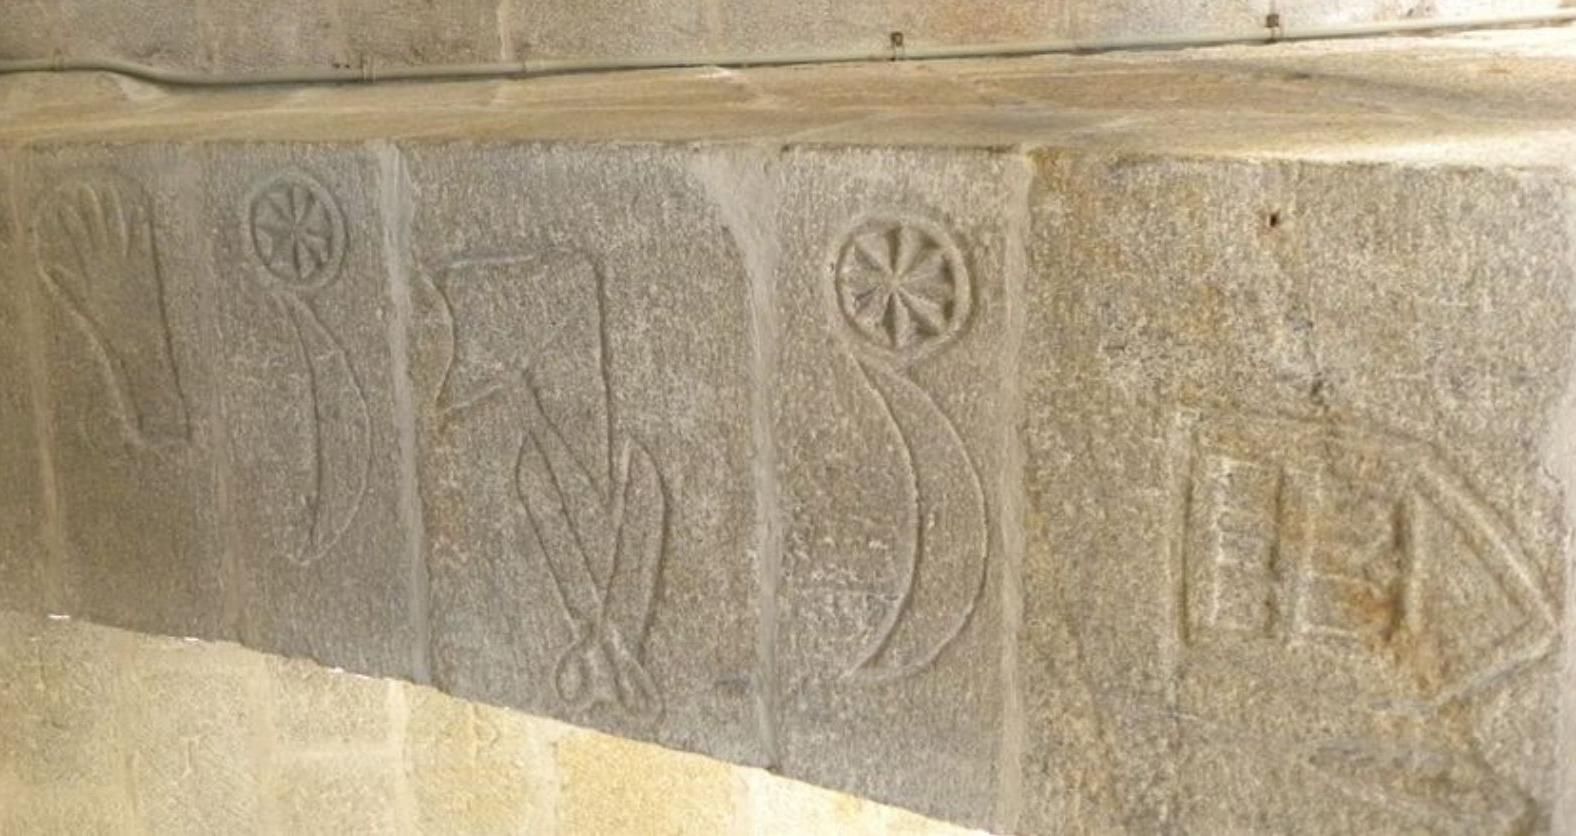 Algunas de las marcas gremiales presentes en uno de los arcos del templo.